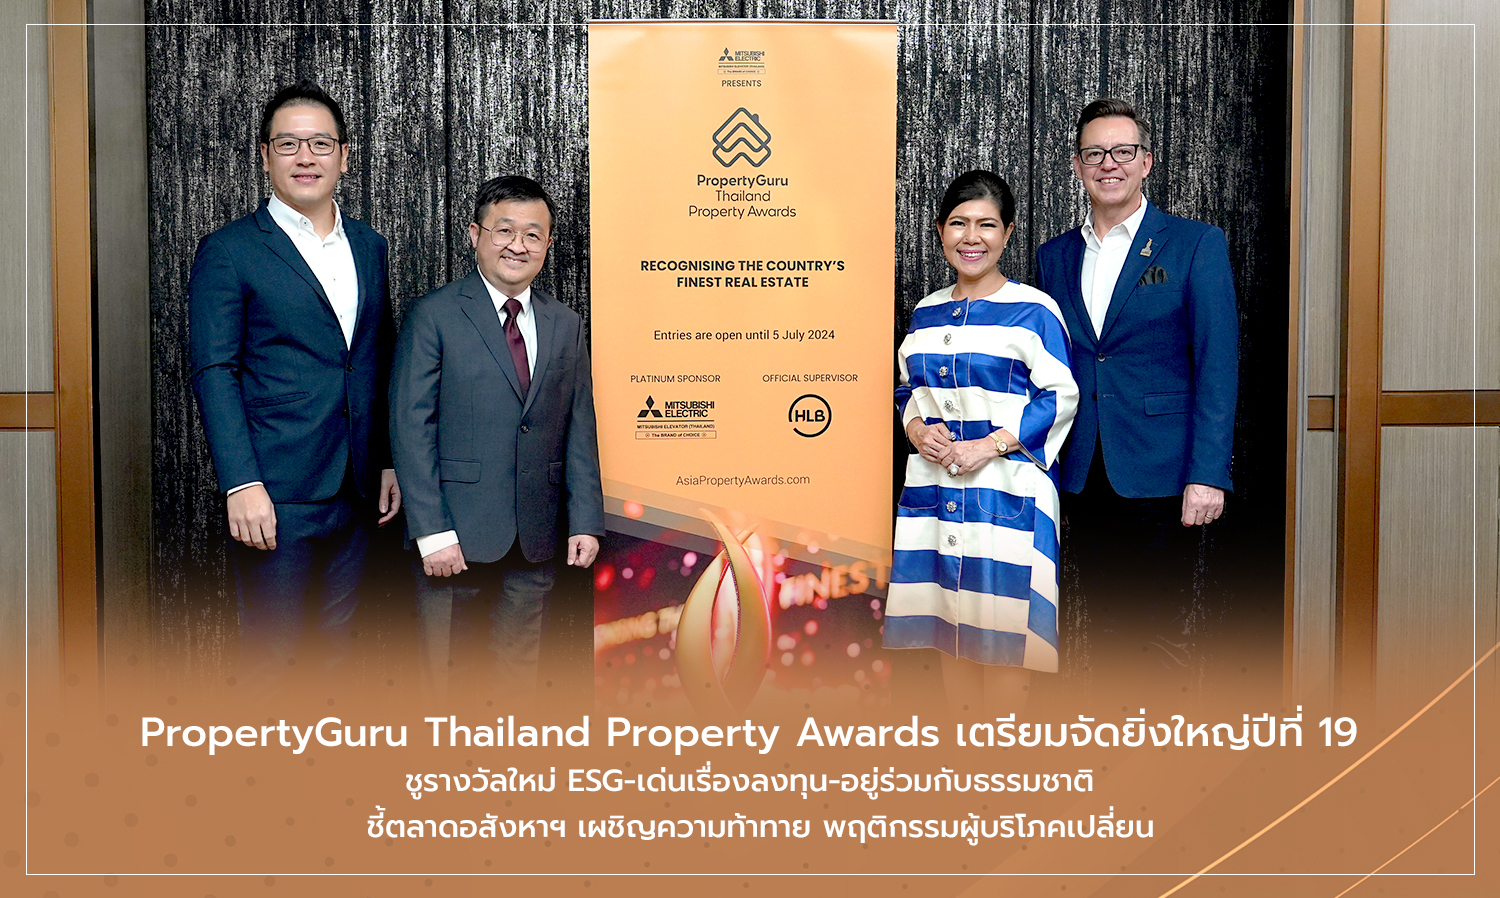 PropertyGuru Thailand Property Awards เตรียมจัดยิ่งใหญ่ปีที่ 19 ชูรางวัลใหม่ ESG-เด่นเรื่องลงทุน-อยู่ร่วมกับธรรมชาติ  ชี้ตลาดอสังหาฯ เผชิญความท้าทาย พฤติกรรมผู้บริโภคเปลี่ยน